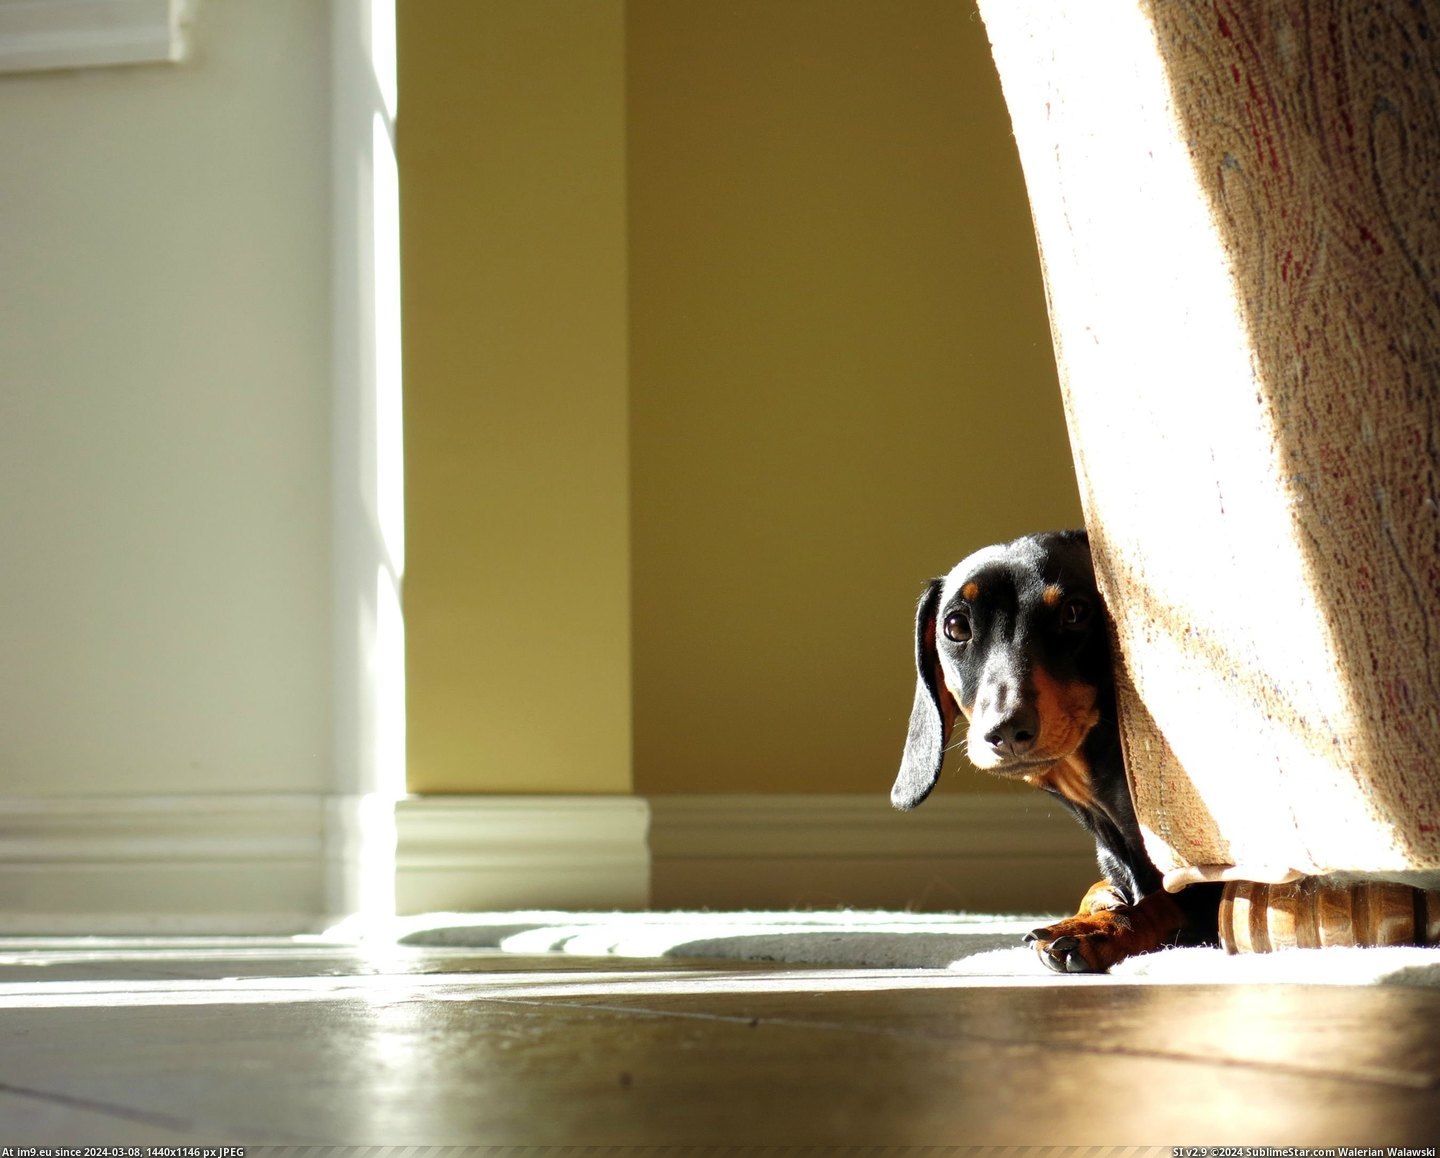 #Puppy #Dachshund #Shy [Aww] My Dachshund puppy is really shy. Pic. (Изображение из альбом My r/AWW favs))